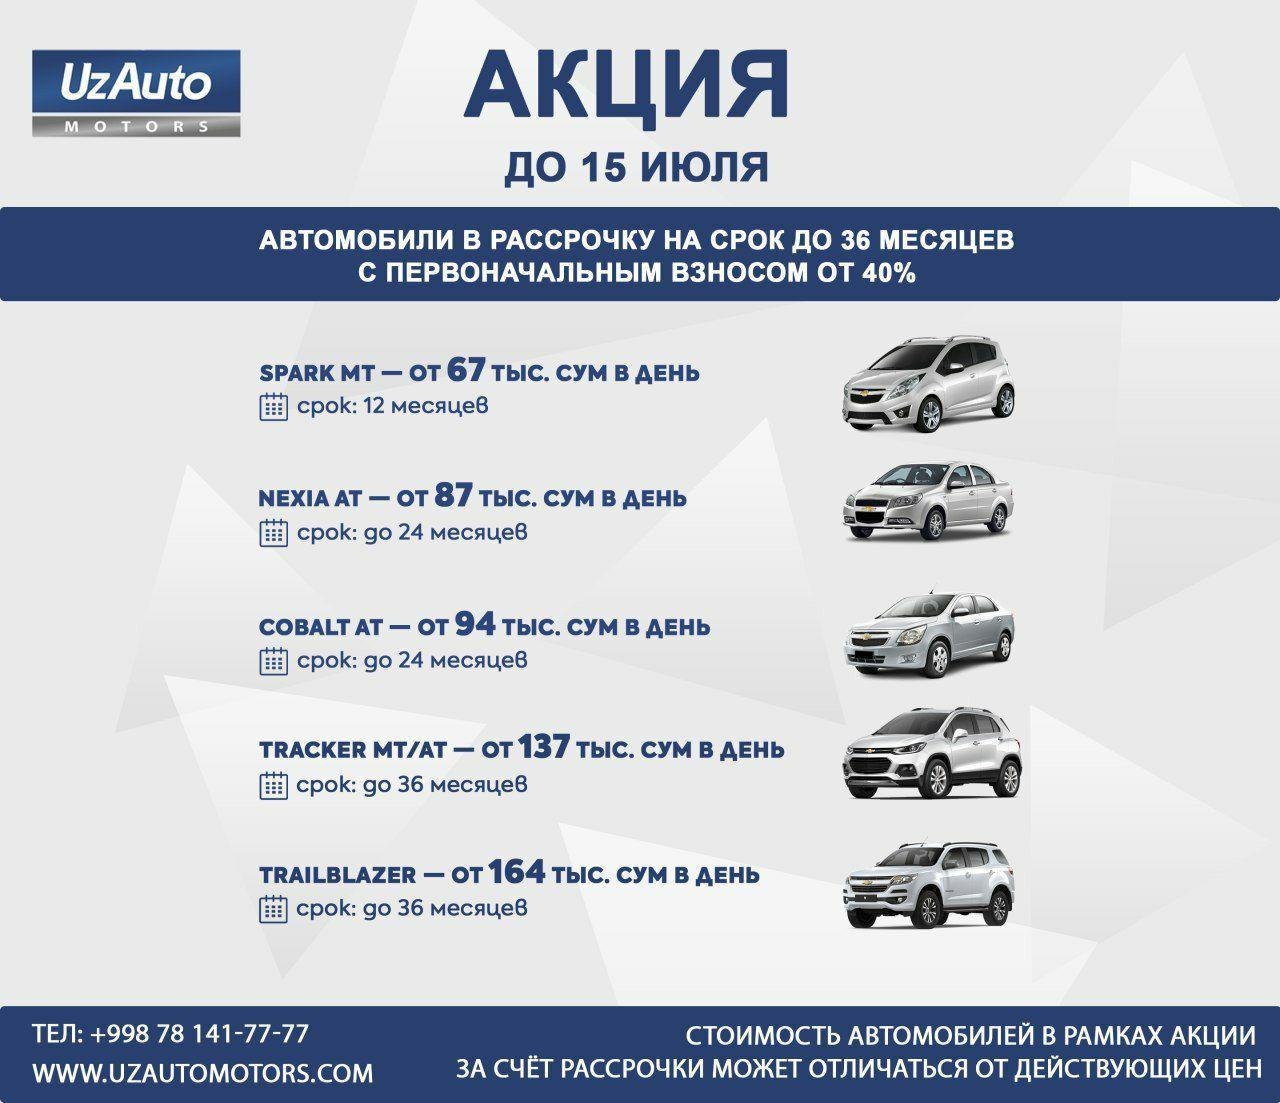 UzAuto Motors предлагает покупку авто в рассрочку: акция действует до 15 июля